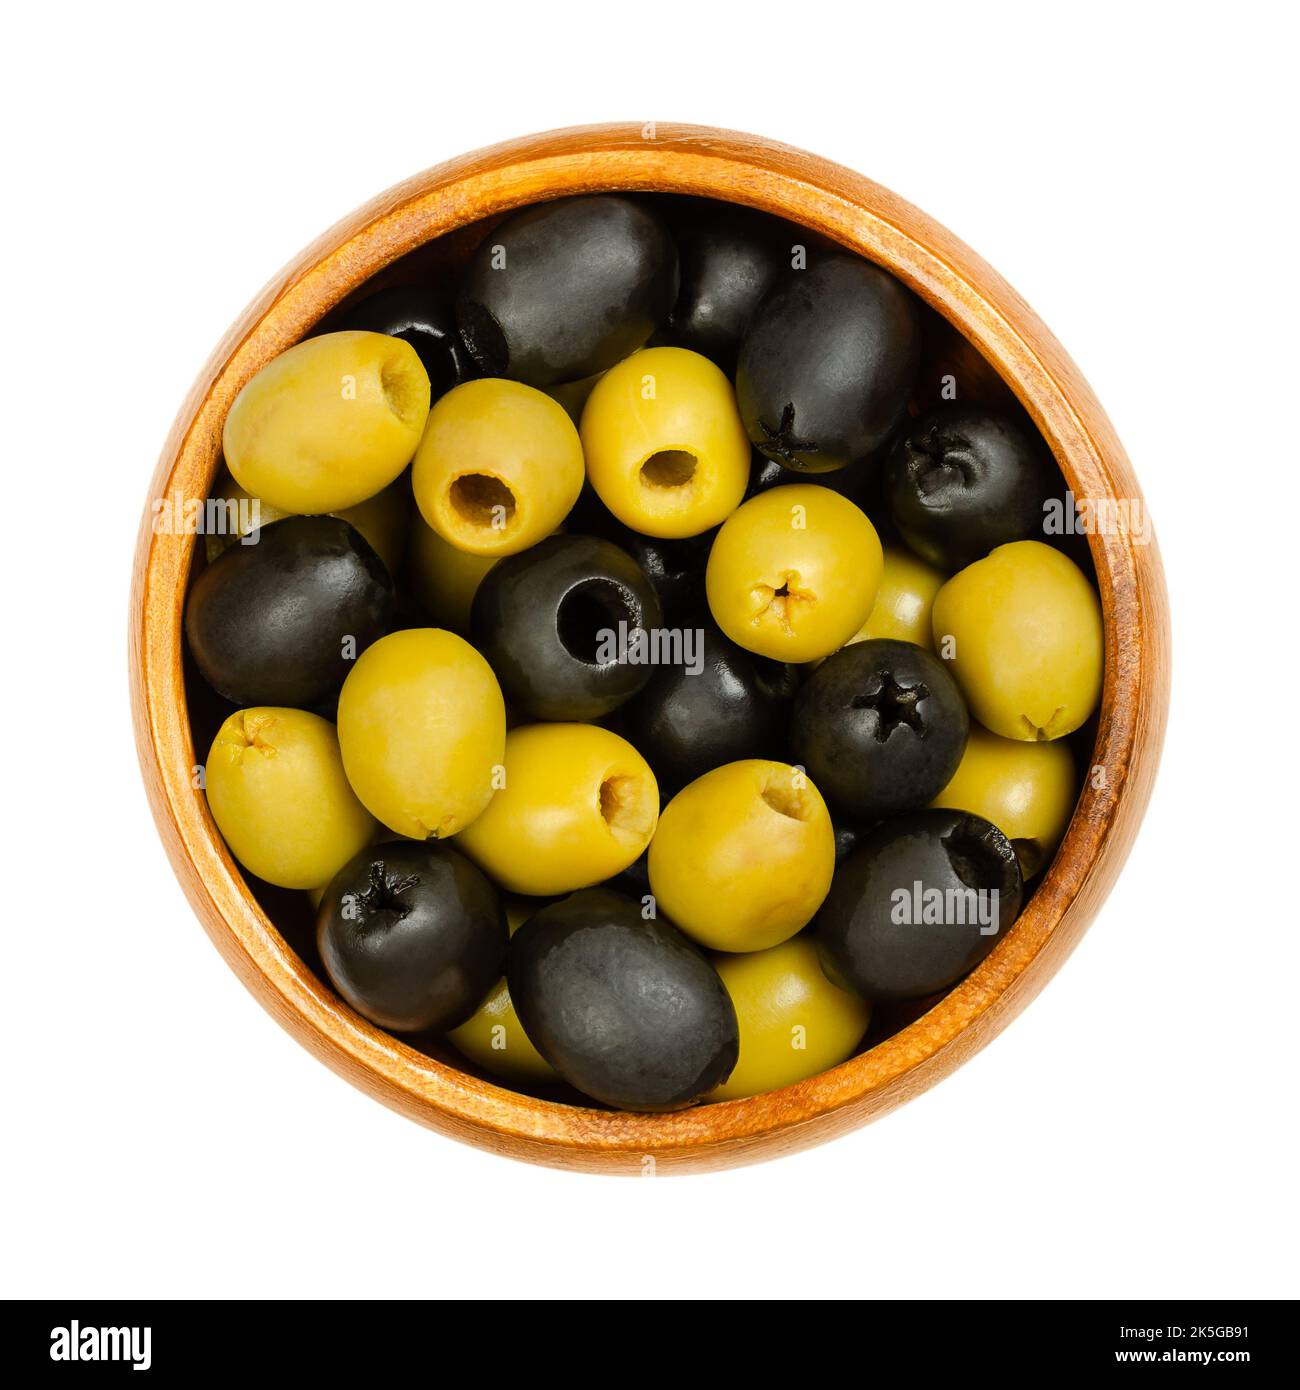 Grüne und schwarze Oliven, Hojiblanca, in einer Holzschale entsteint. Europäische Oliven, Olea europaea. Beliebte Tafeloliven mit einem geringeren Ölgehalt. Stockfoto